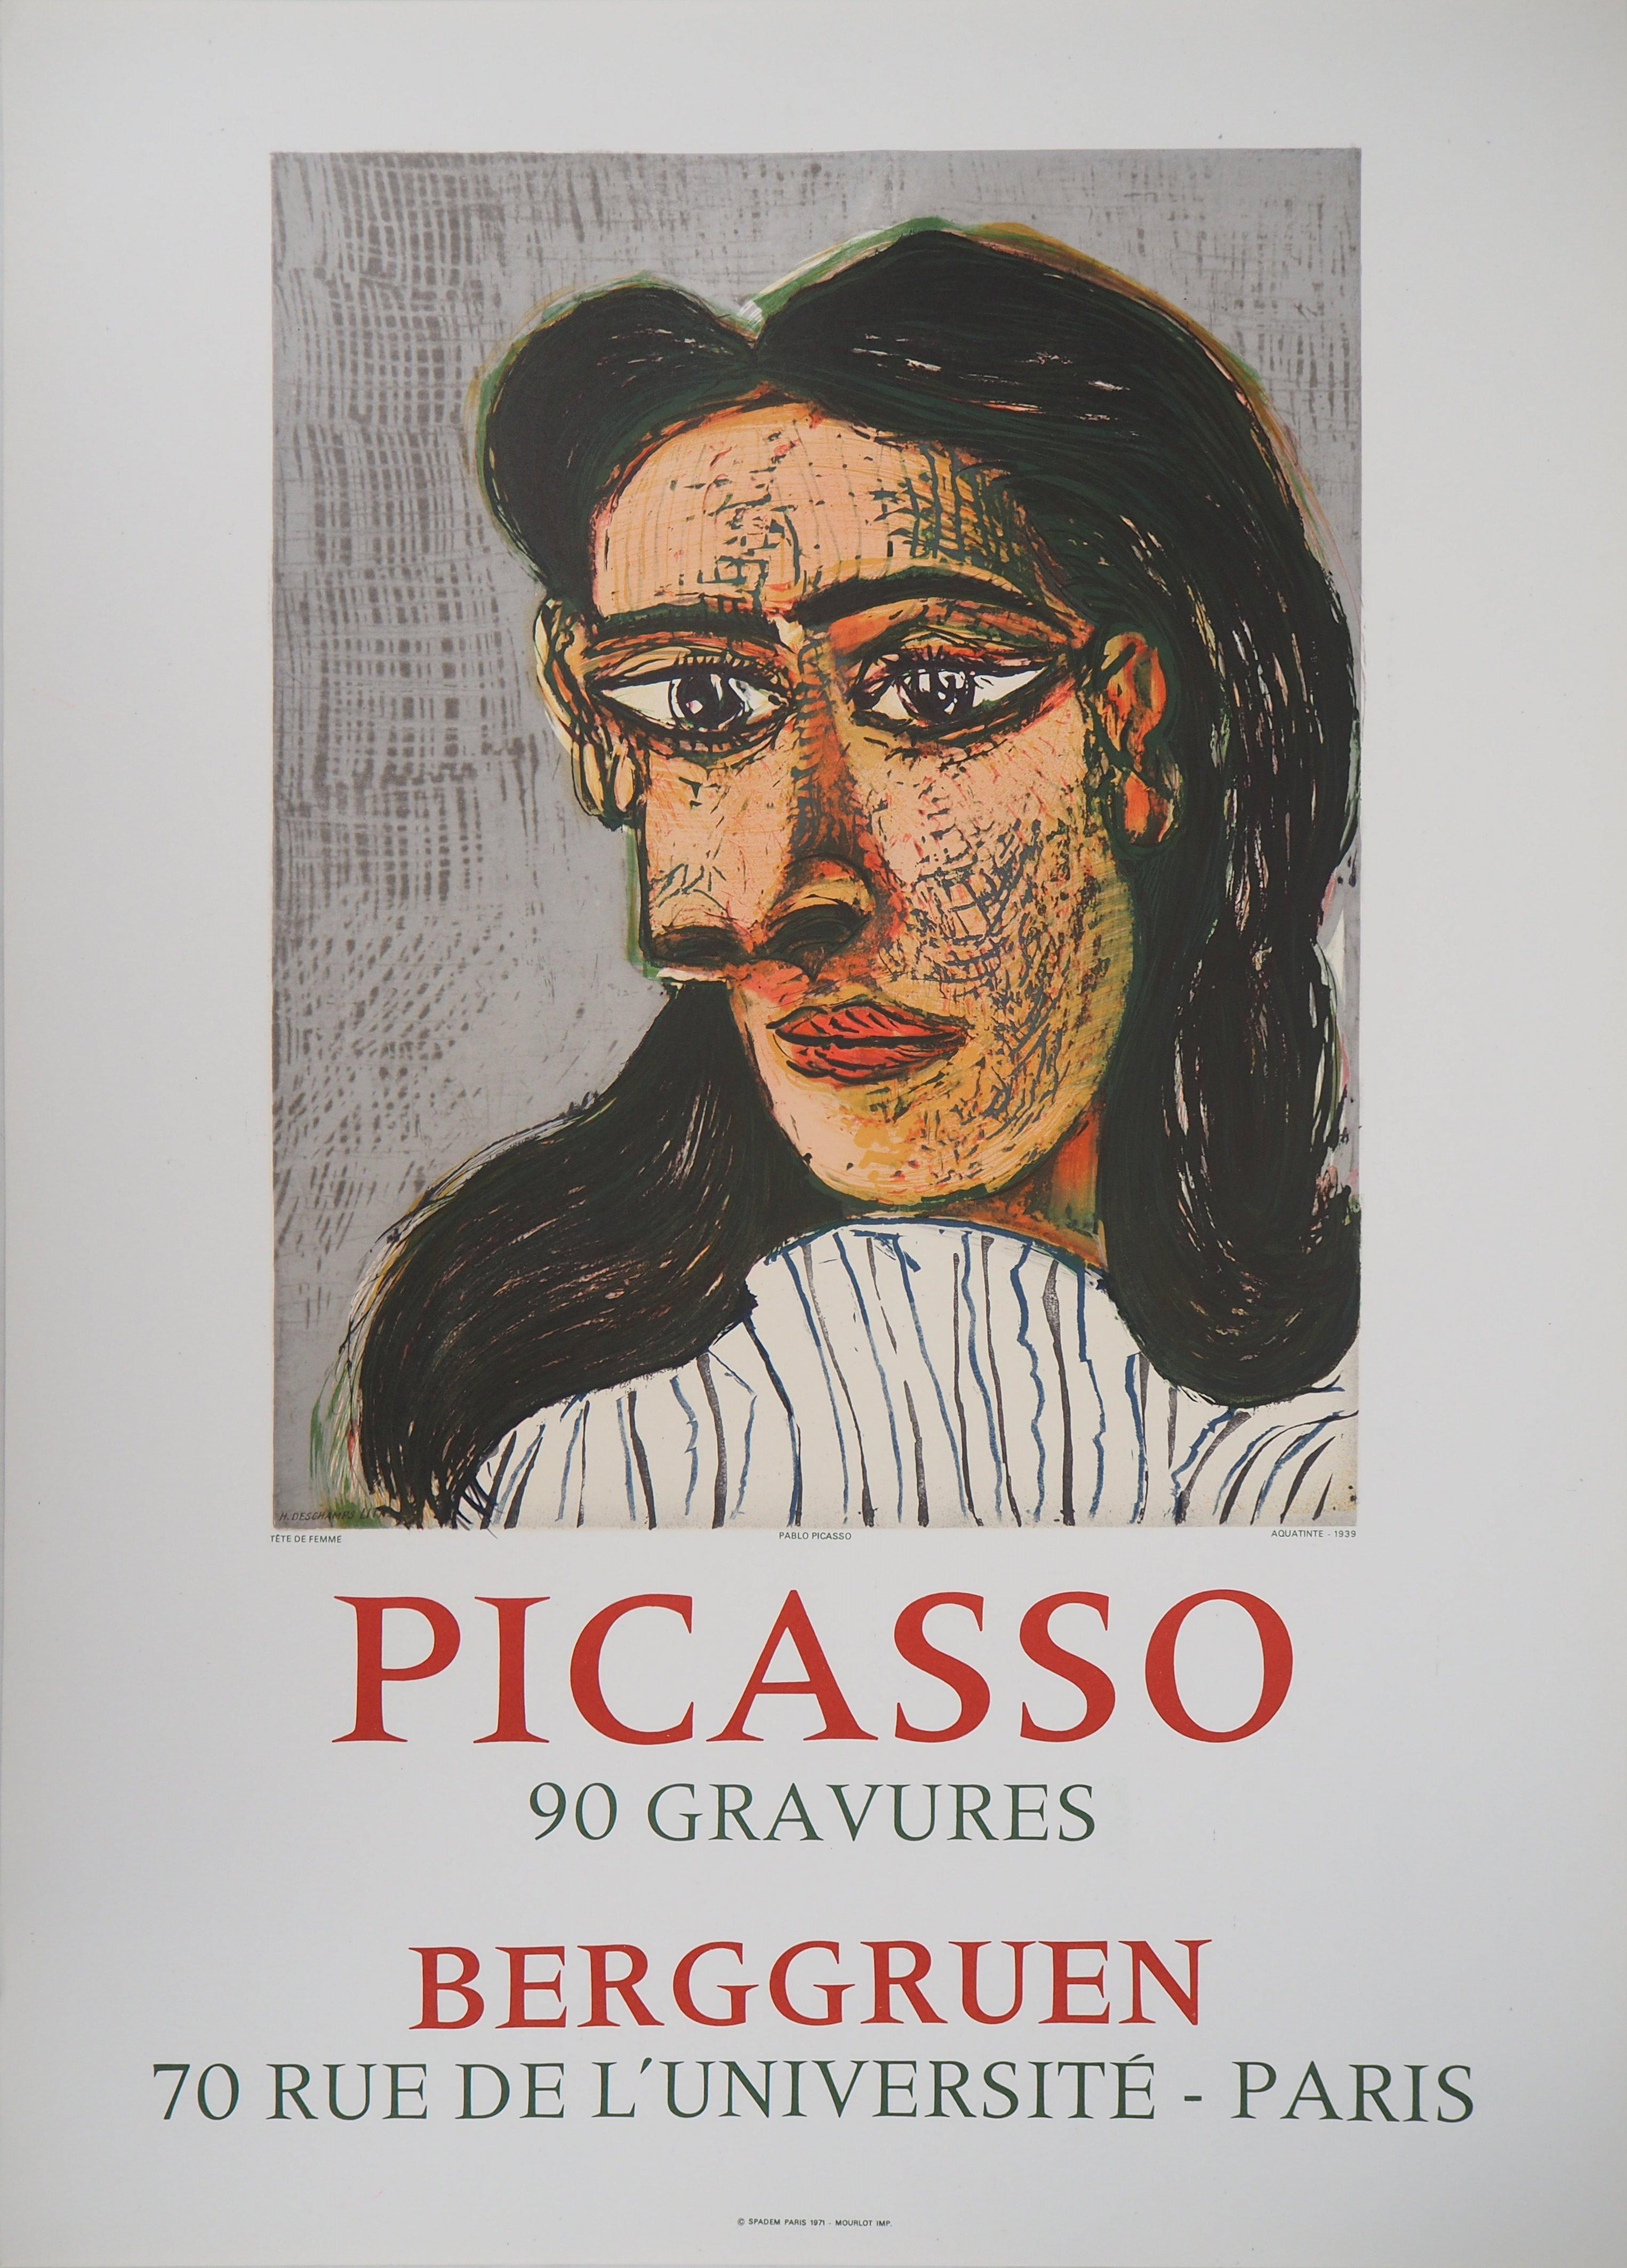 (after) Pablo Picasso Portrait Print – Frauenporträt – Lithographieplakat: Berggruen  - Mourlot 1971 (Cwiklitzer #386)